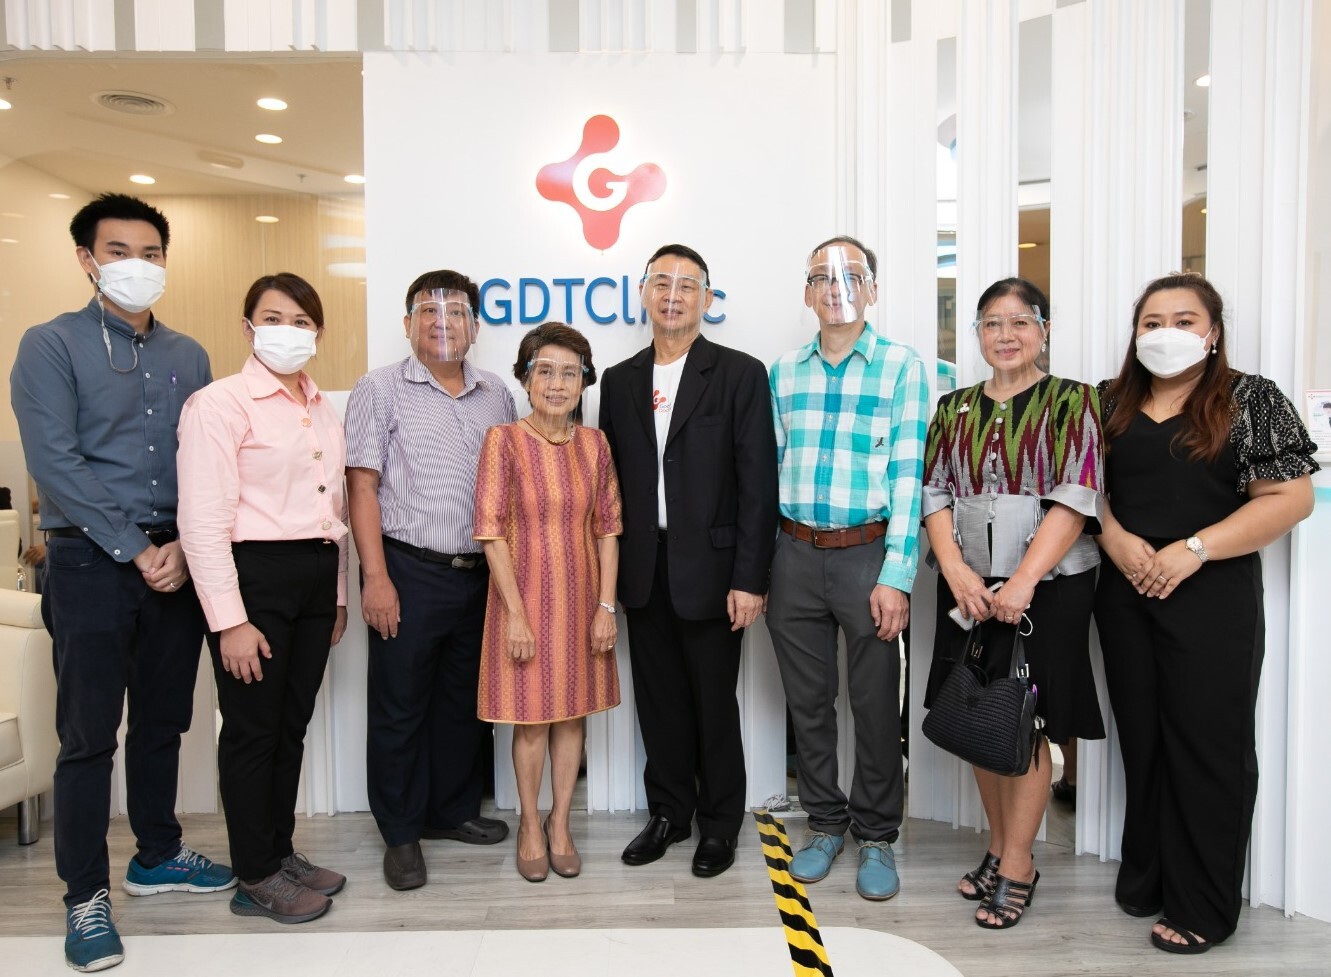 บริษัท กู๊ด ดอกเตอร์ เทคโนโลยี ประเทศไทย เปิดคลินิกต้อนรับผู้แทนจากสำนักงานหลักประกันสุขภาพแห่งชาติ (สปสช.)